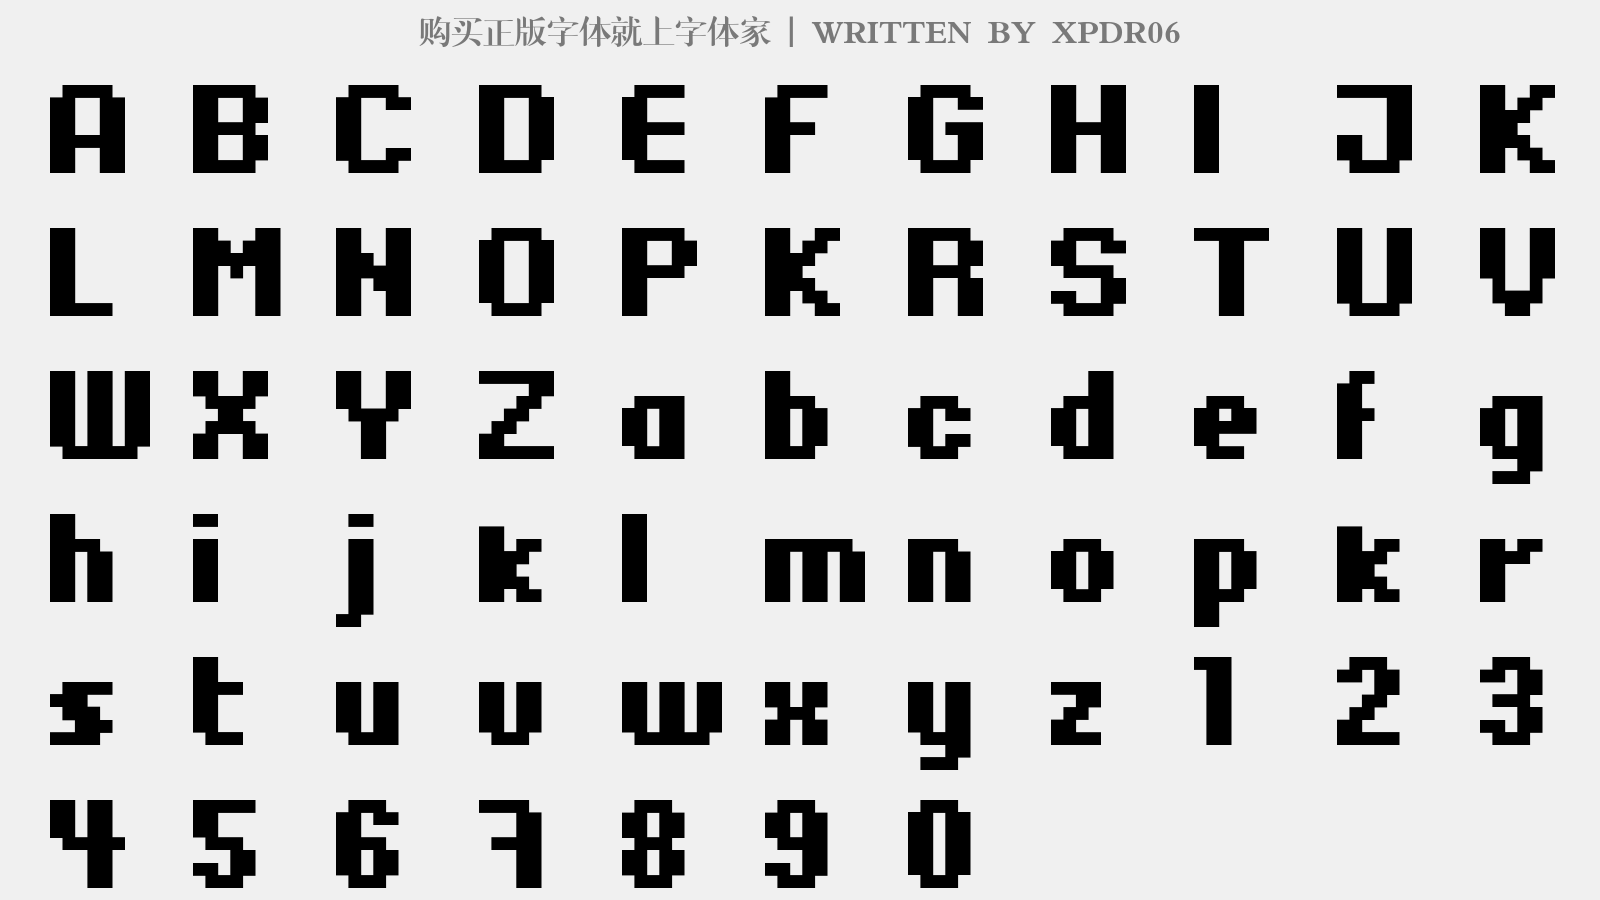 XPDR06 - 大写字母/小写字母/数字